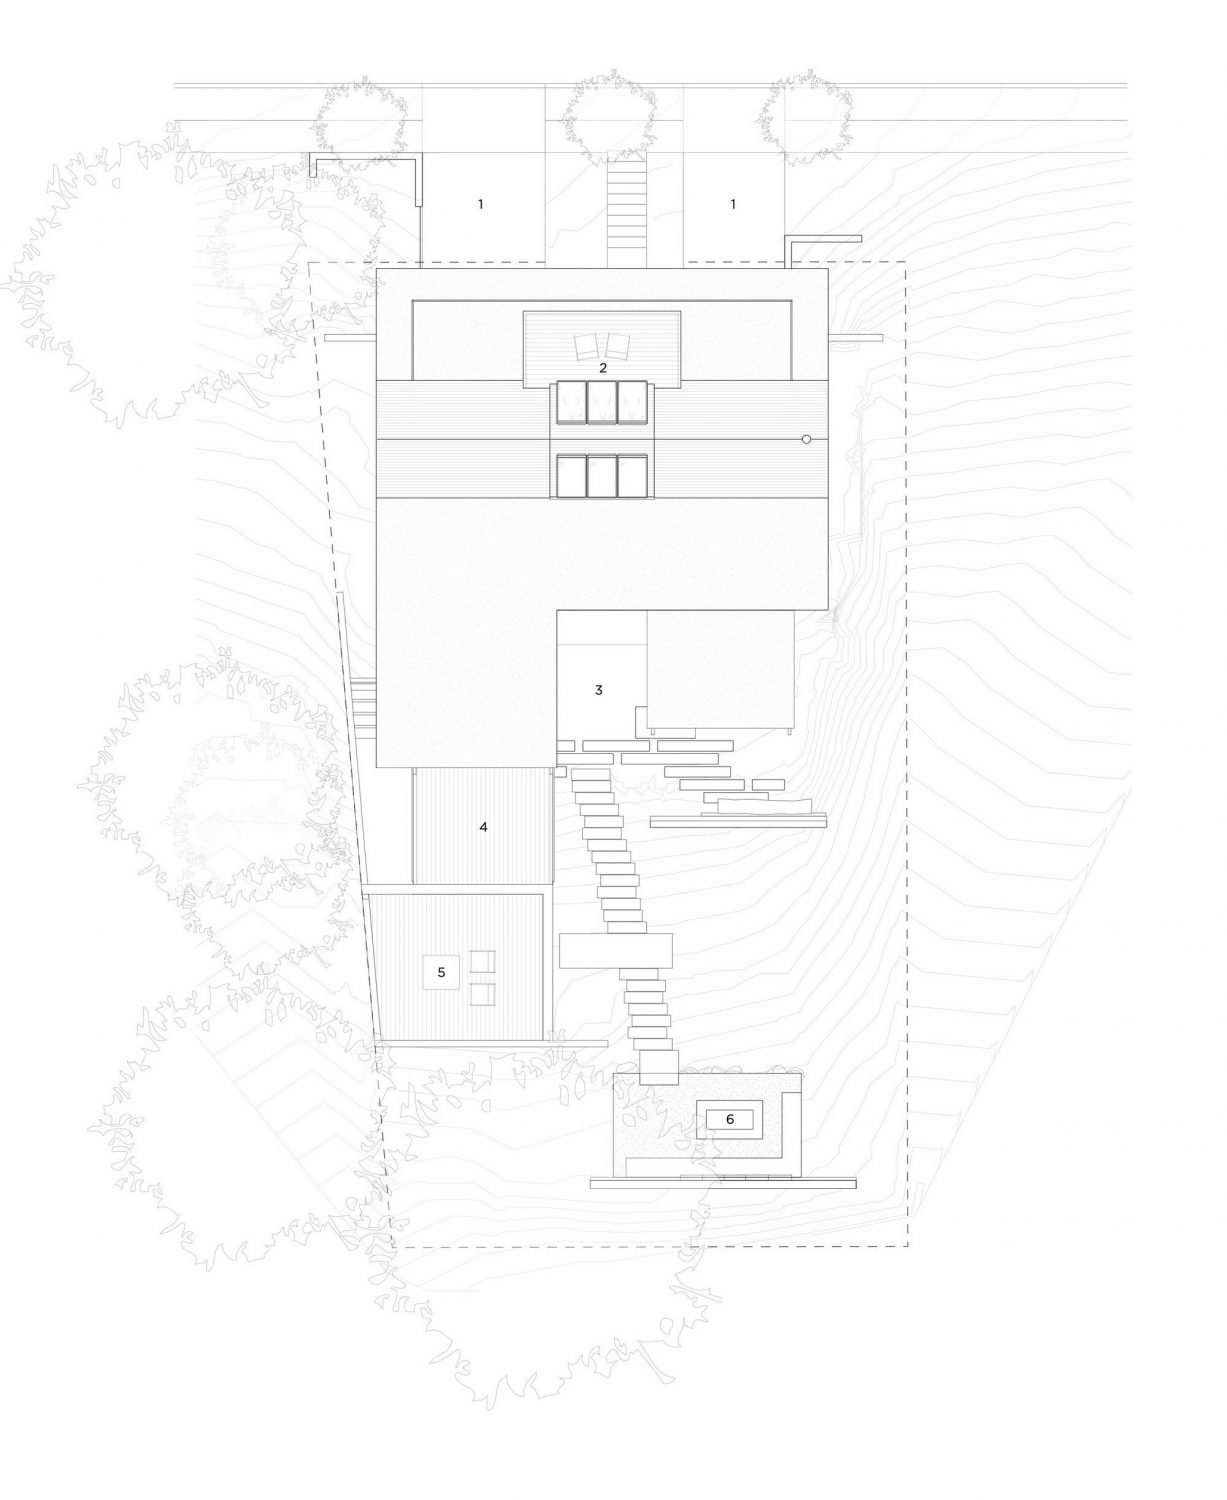 Twin Peaks Residence by Feldman Architecture